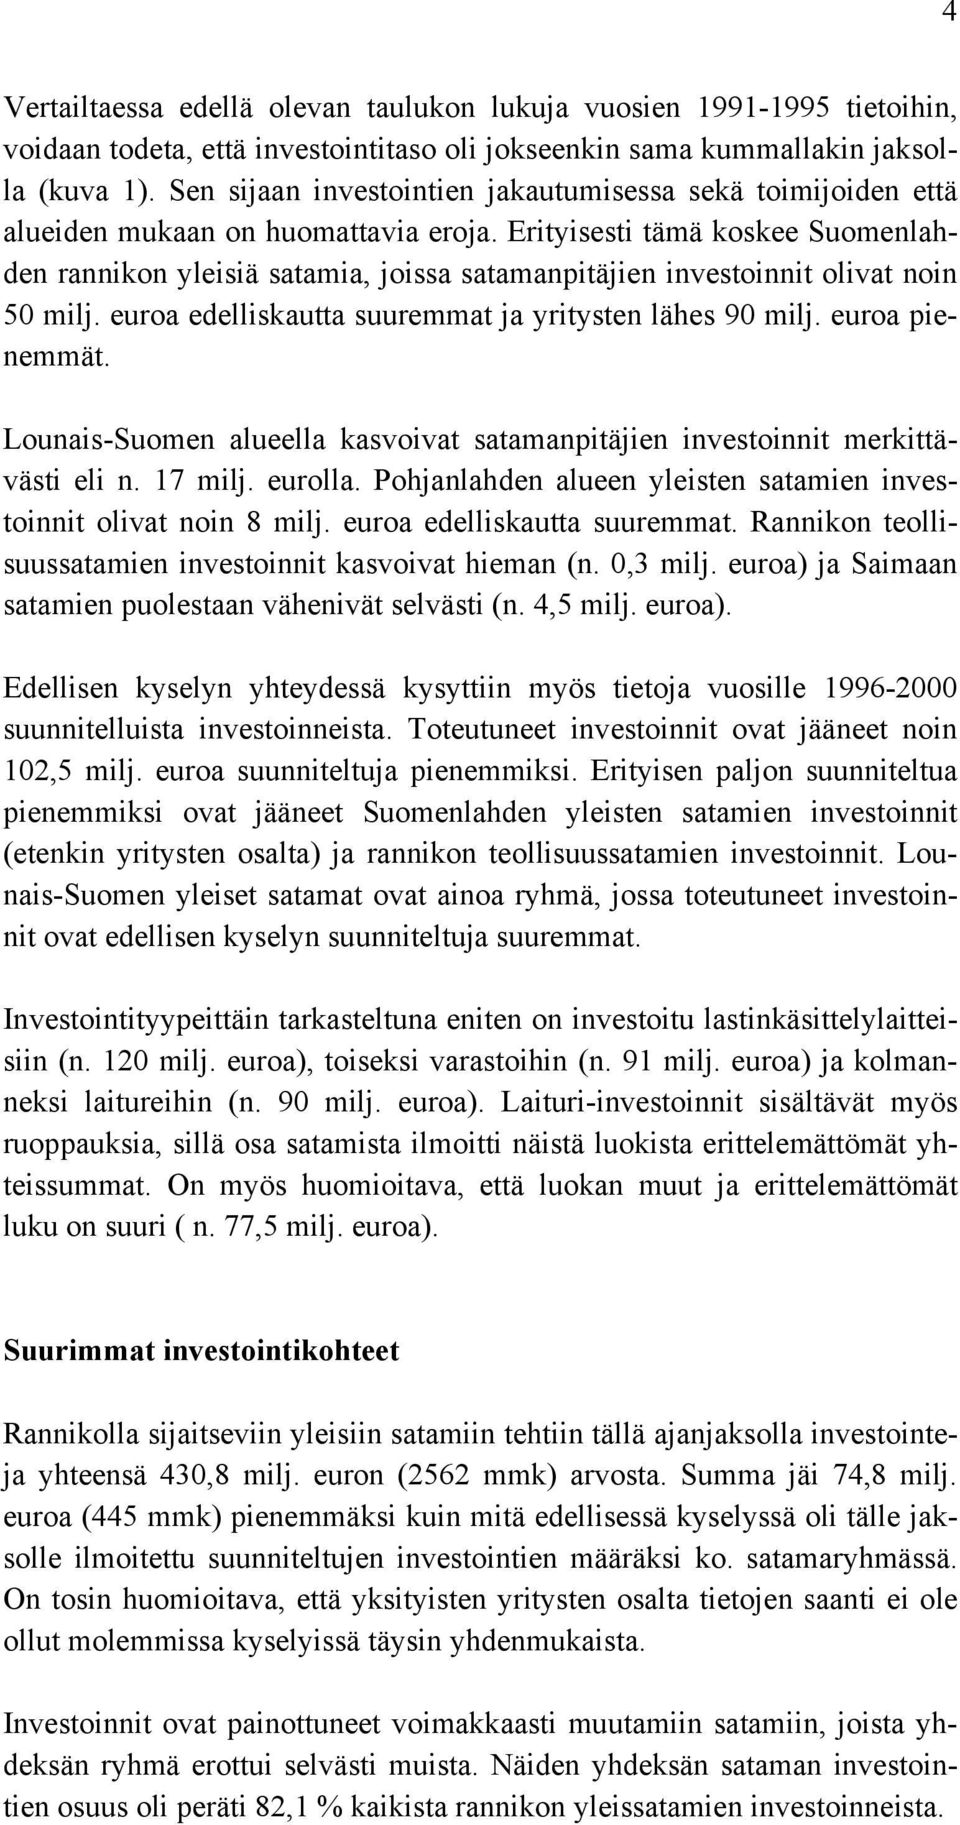 Erityisesti tämä koskee Suomenlahden rannikon yleisiä satamia, joissa satamanpitäjien investoinnit olivat noin 50 milj. euroa edelliskautta suuremmat ja yritysten lähes 90 milj. euroa pienemmät.